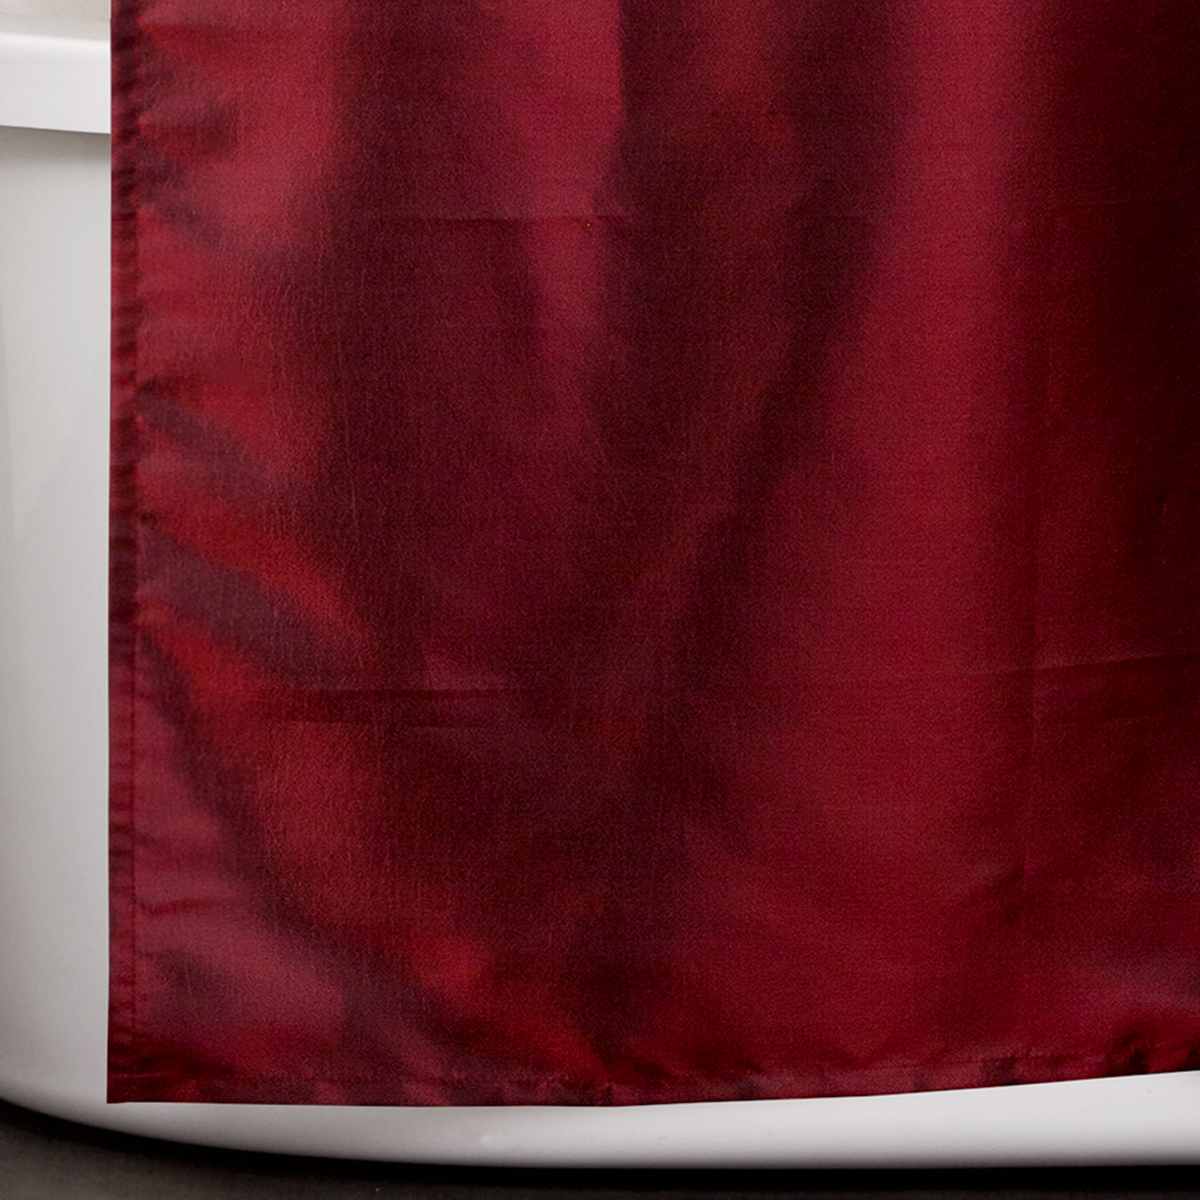 Lush Decor(R) Maria Shower Curtain